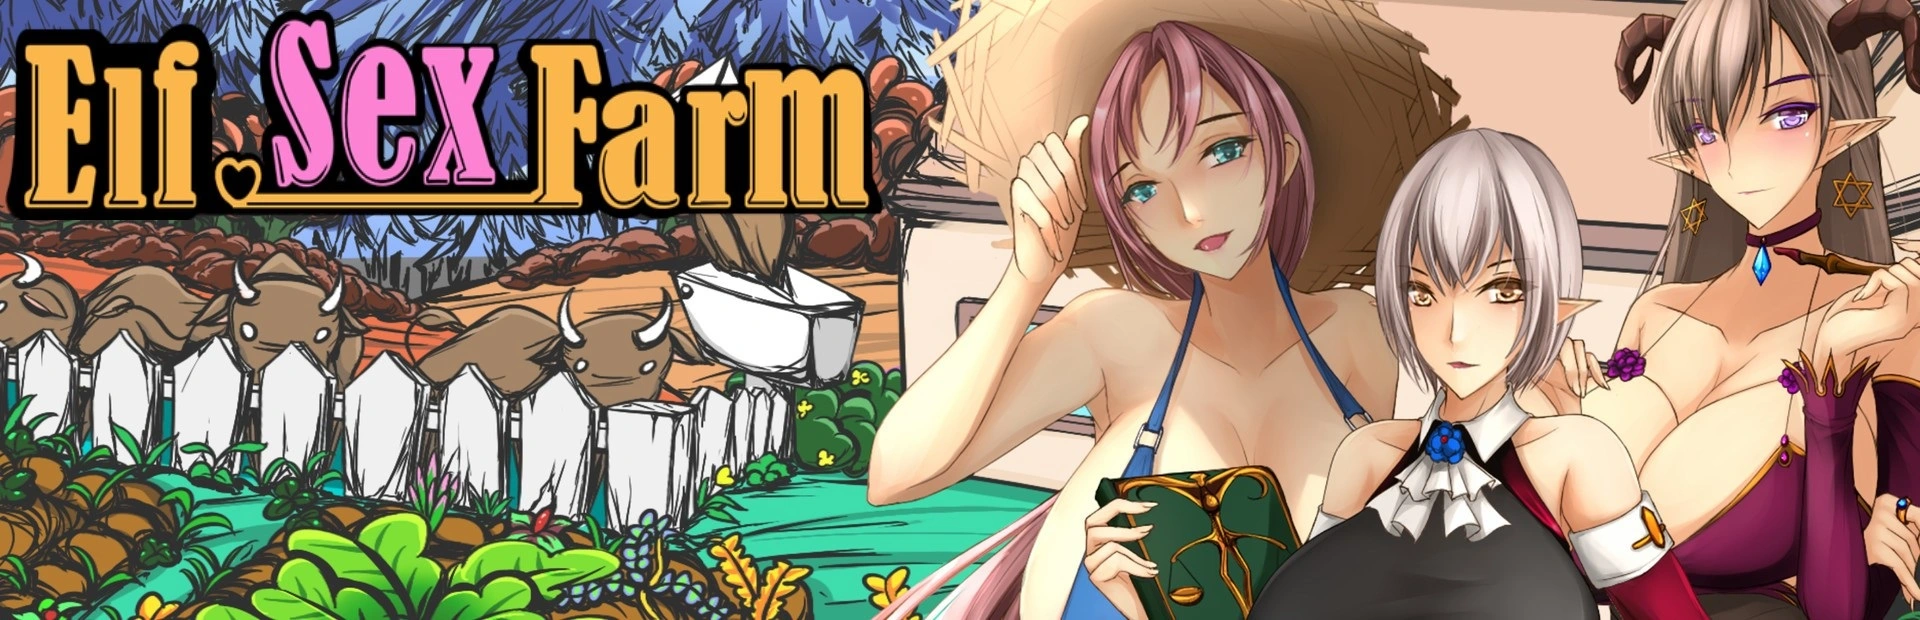 Elf Sex Farm main image